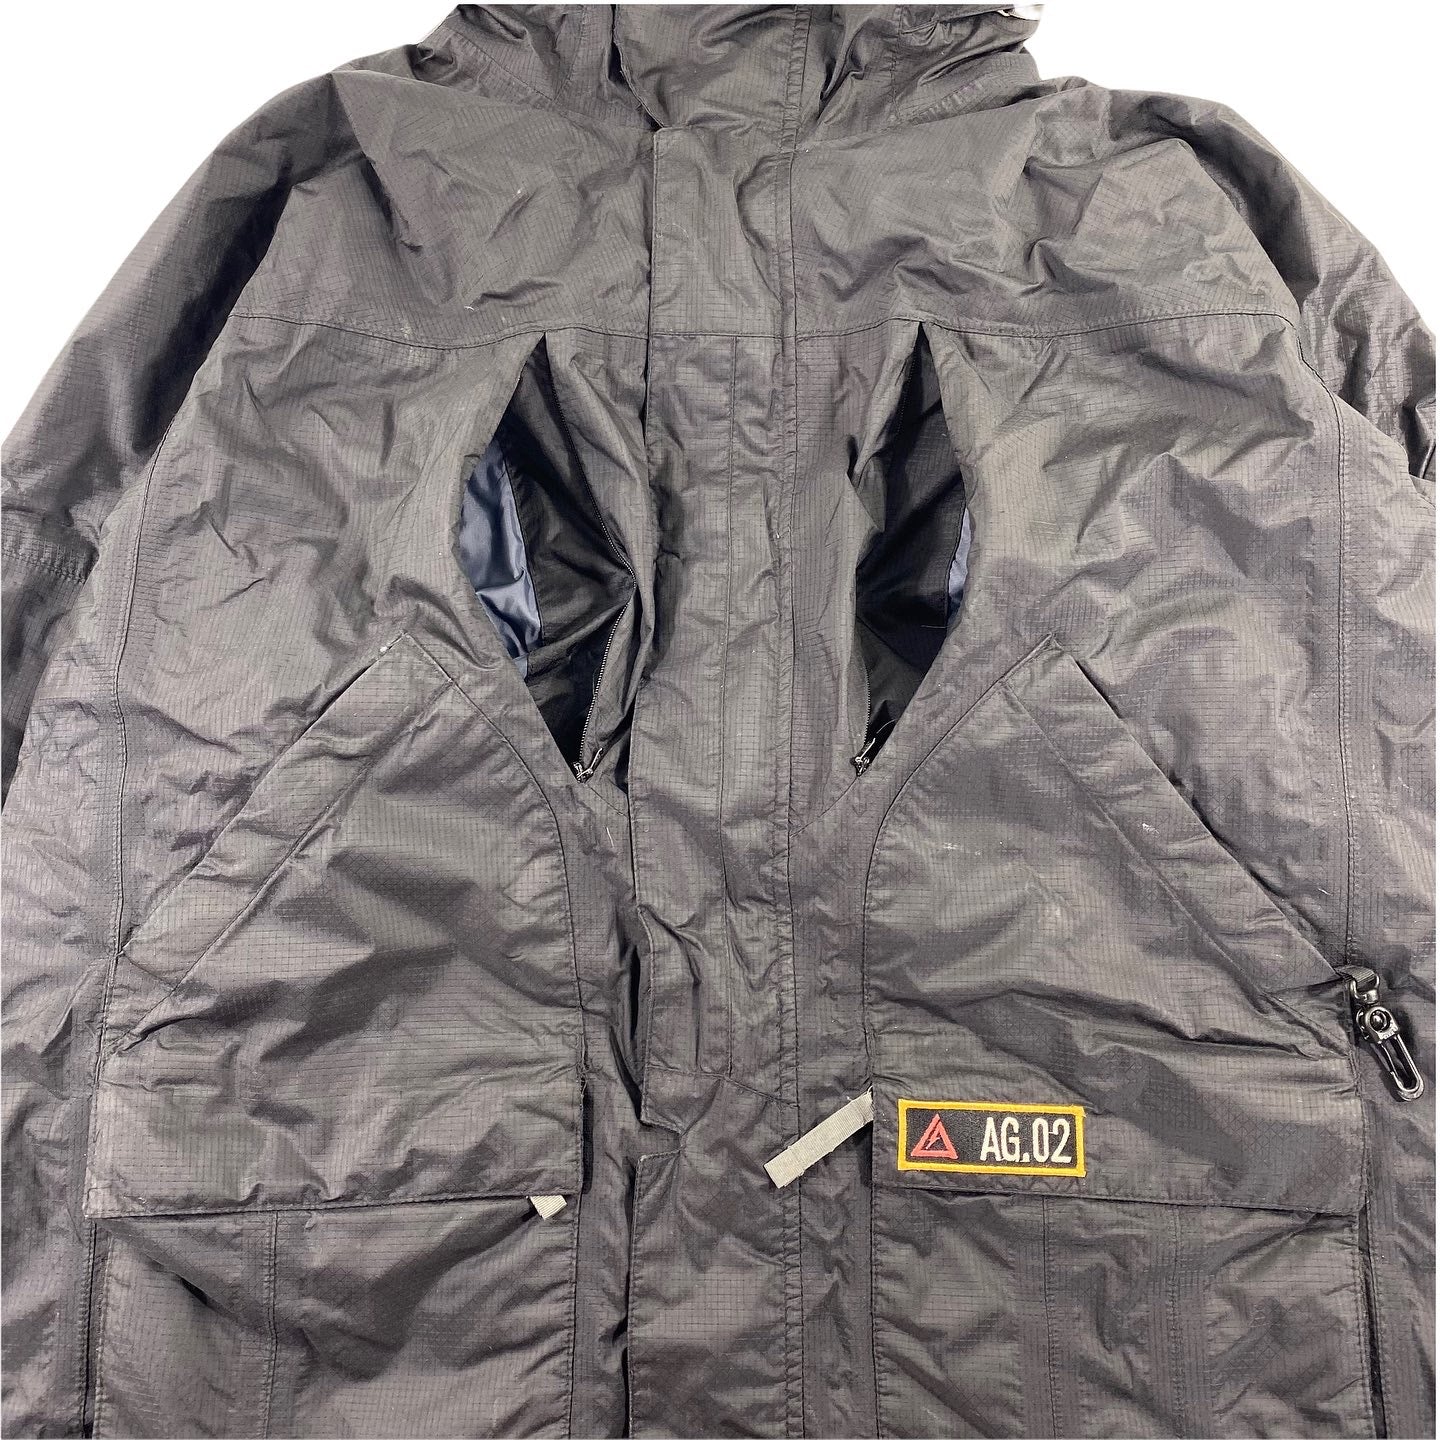 Burton Analog Xenon jacket  Sz large